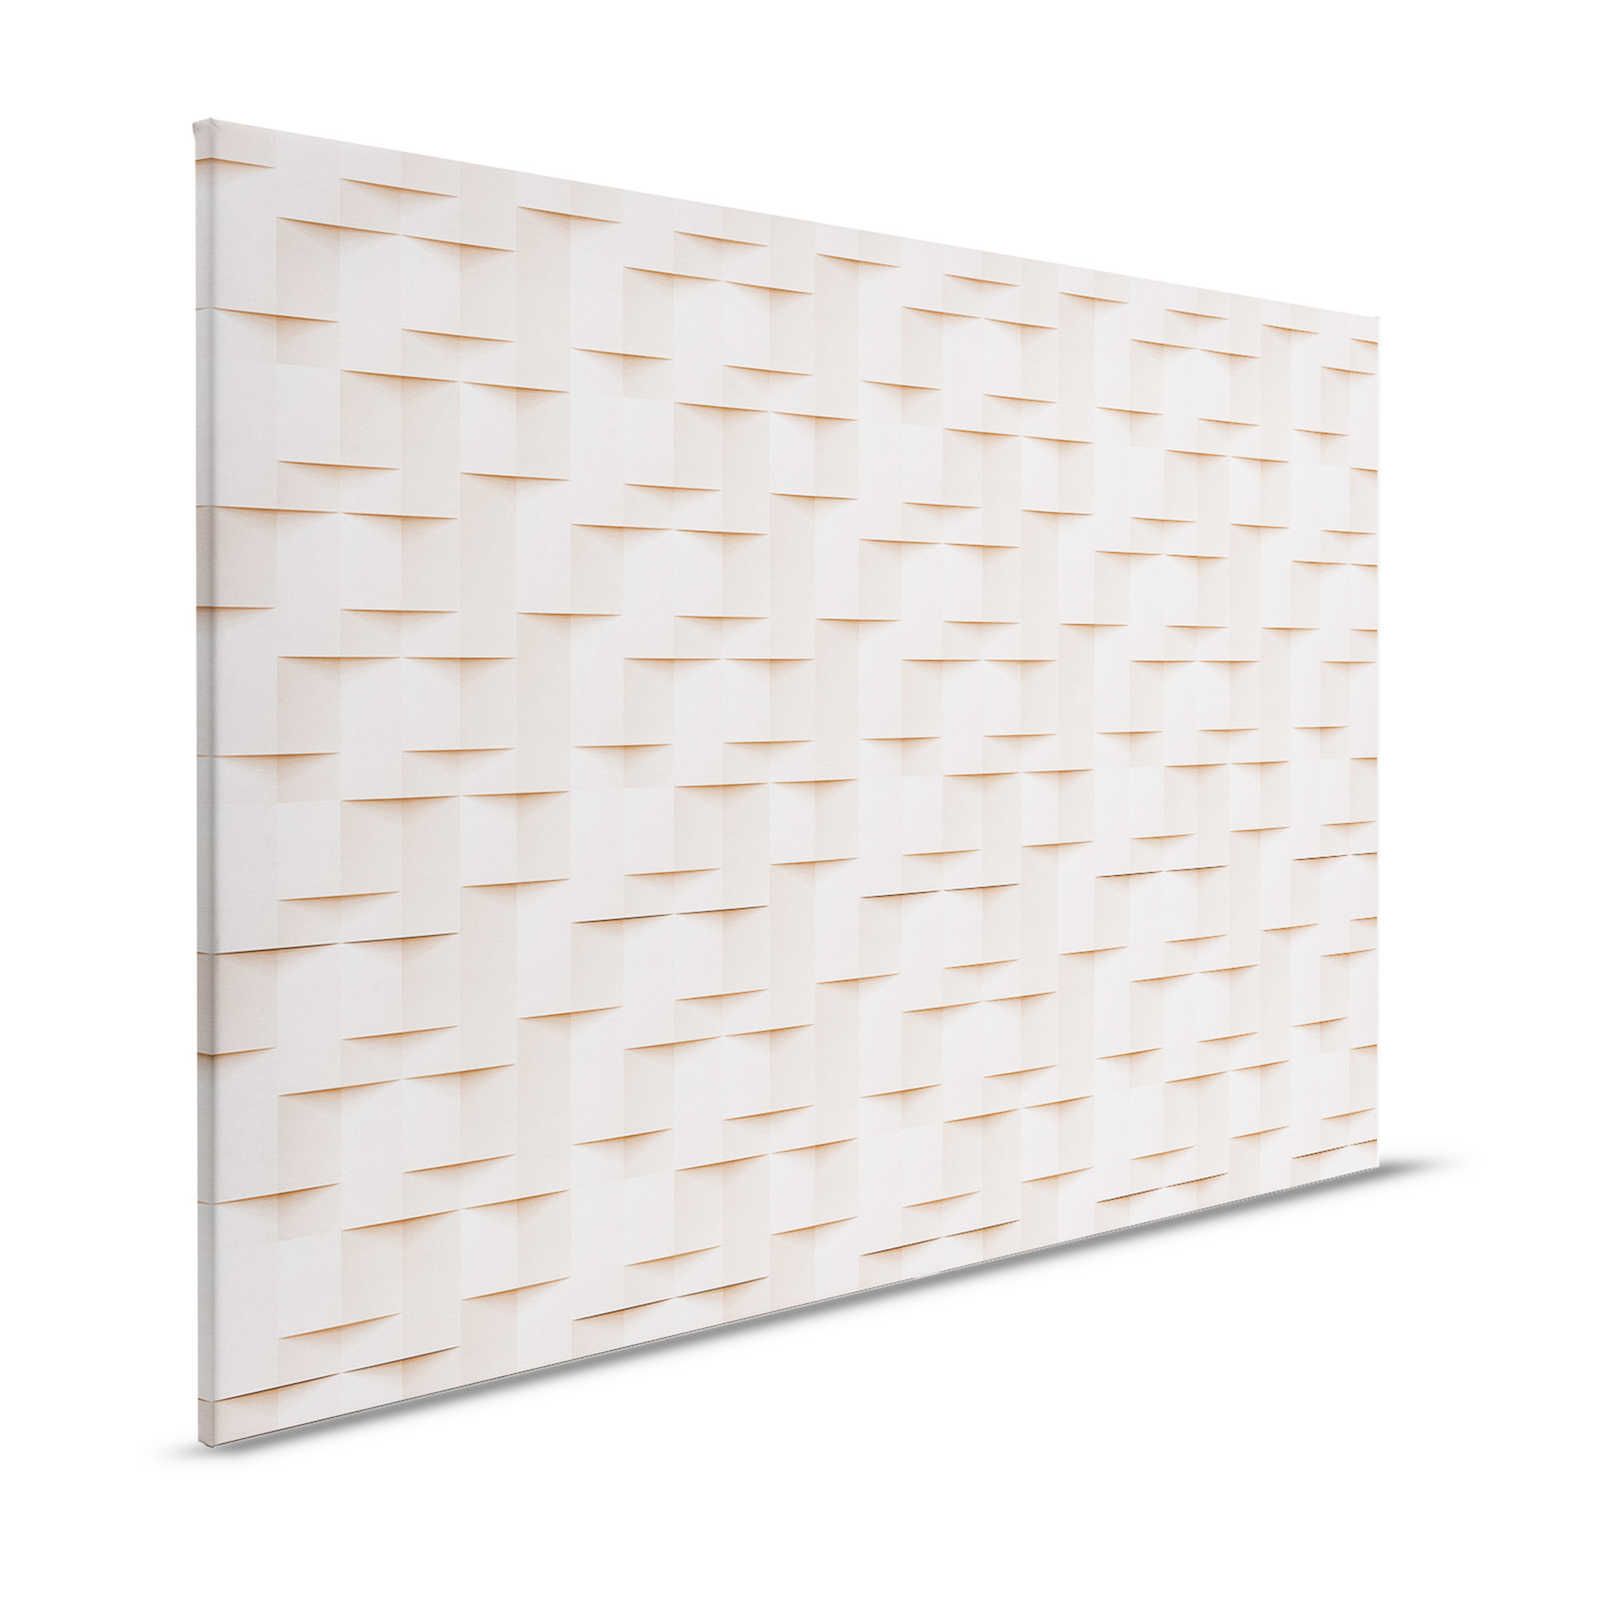 Casa de papel 1 - Lienzo pintura estructura 3D papel origami pliegues - 1,20 m x 0,80 m
